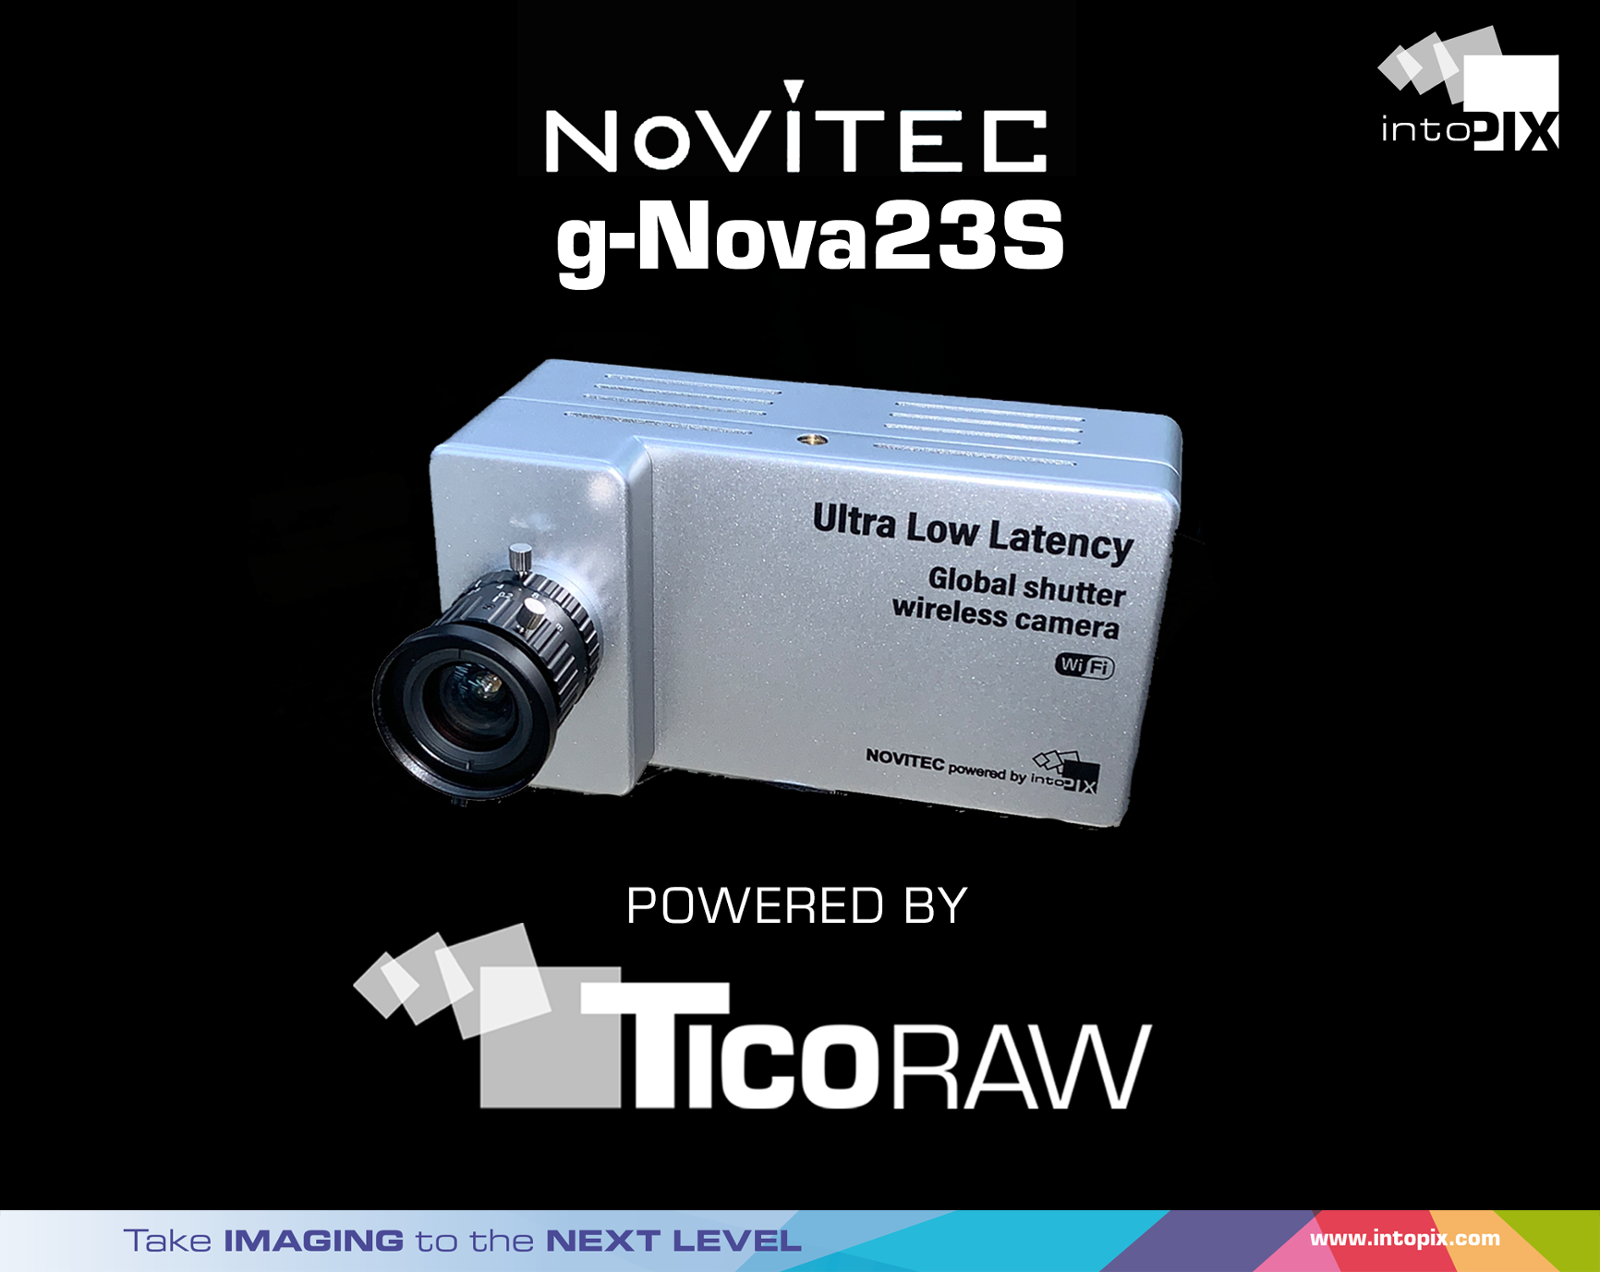 intoPIX annonce l'intégration de TicoRAW dans la nouvelle gamme de caméras industrielles Novitec